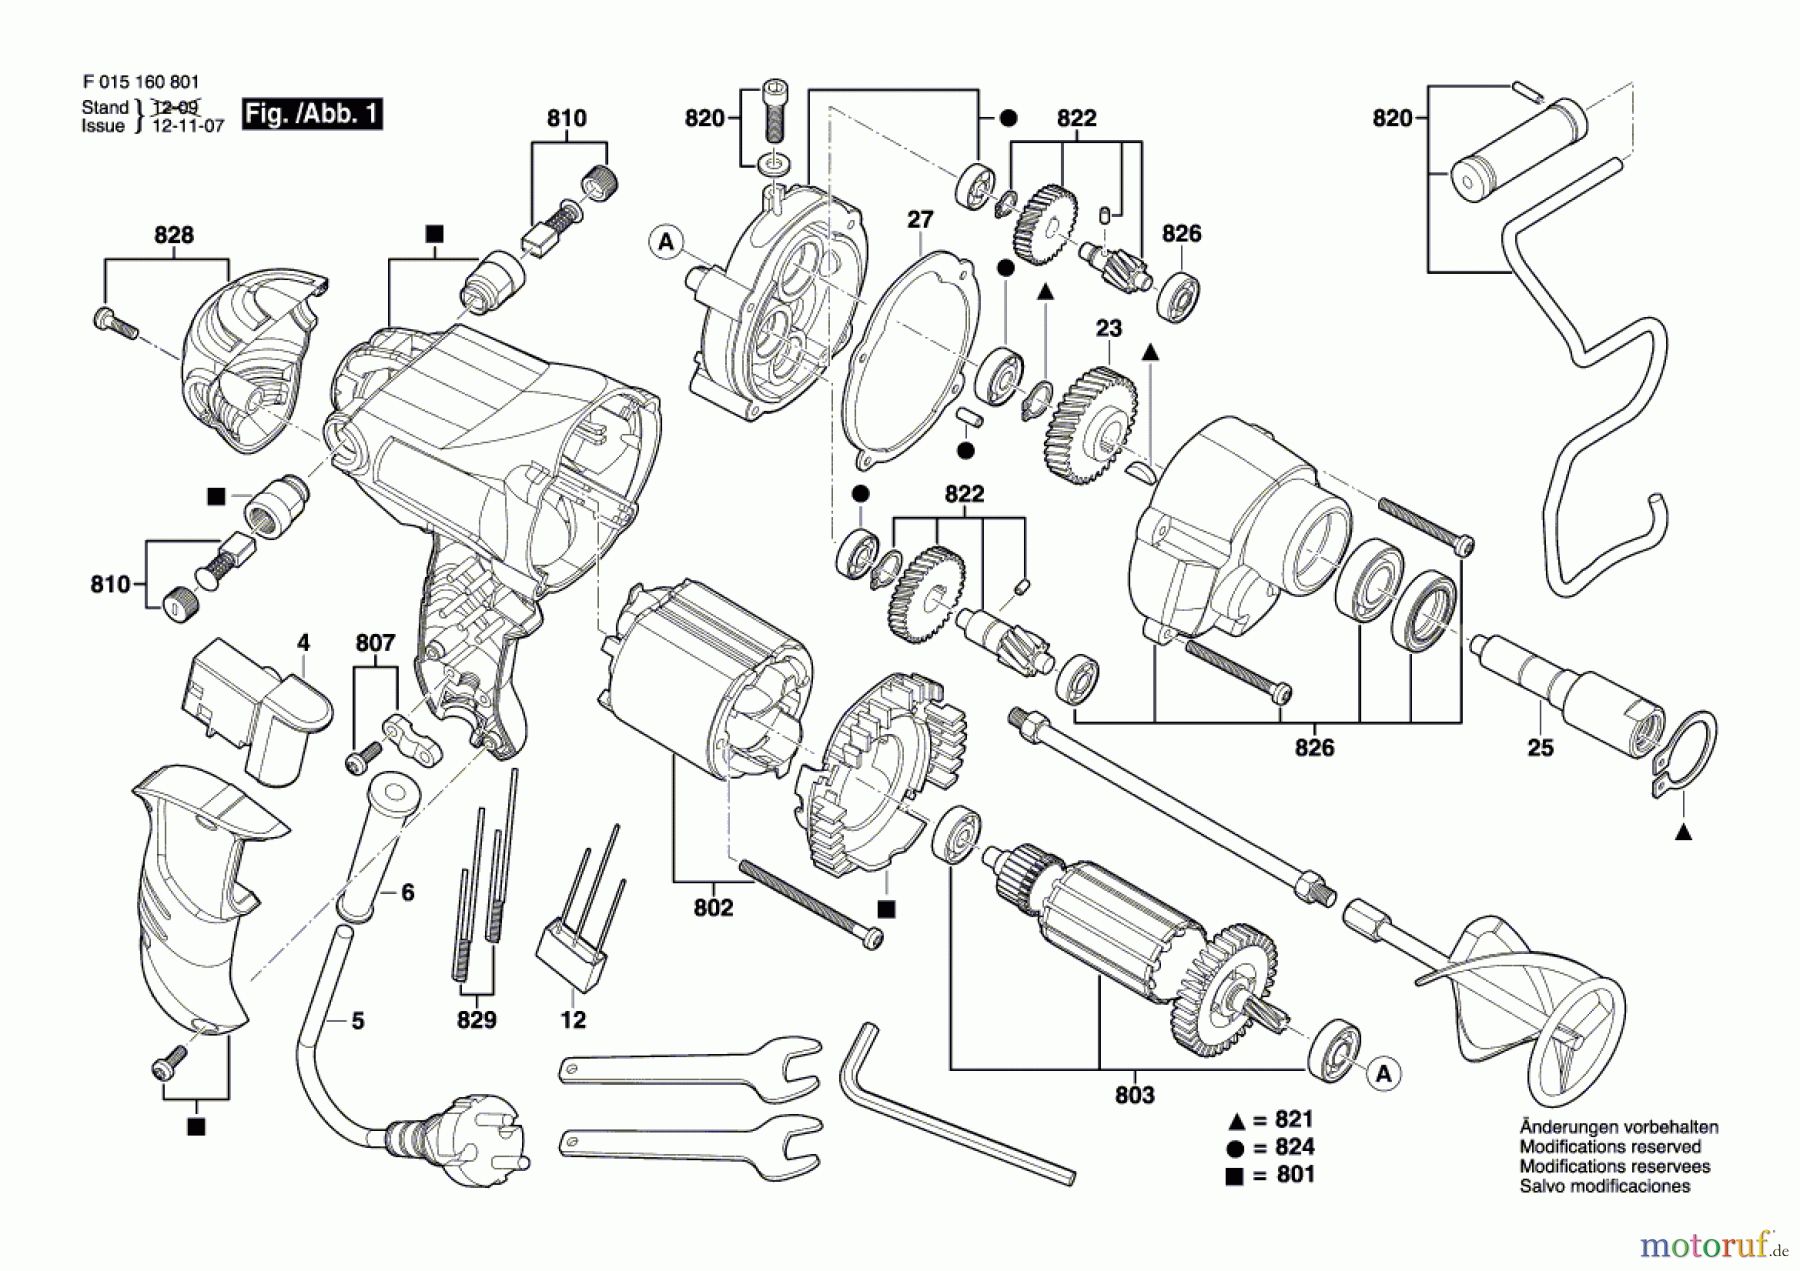  Bosch Werkzeug Rührwerk 1608 Seite 1